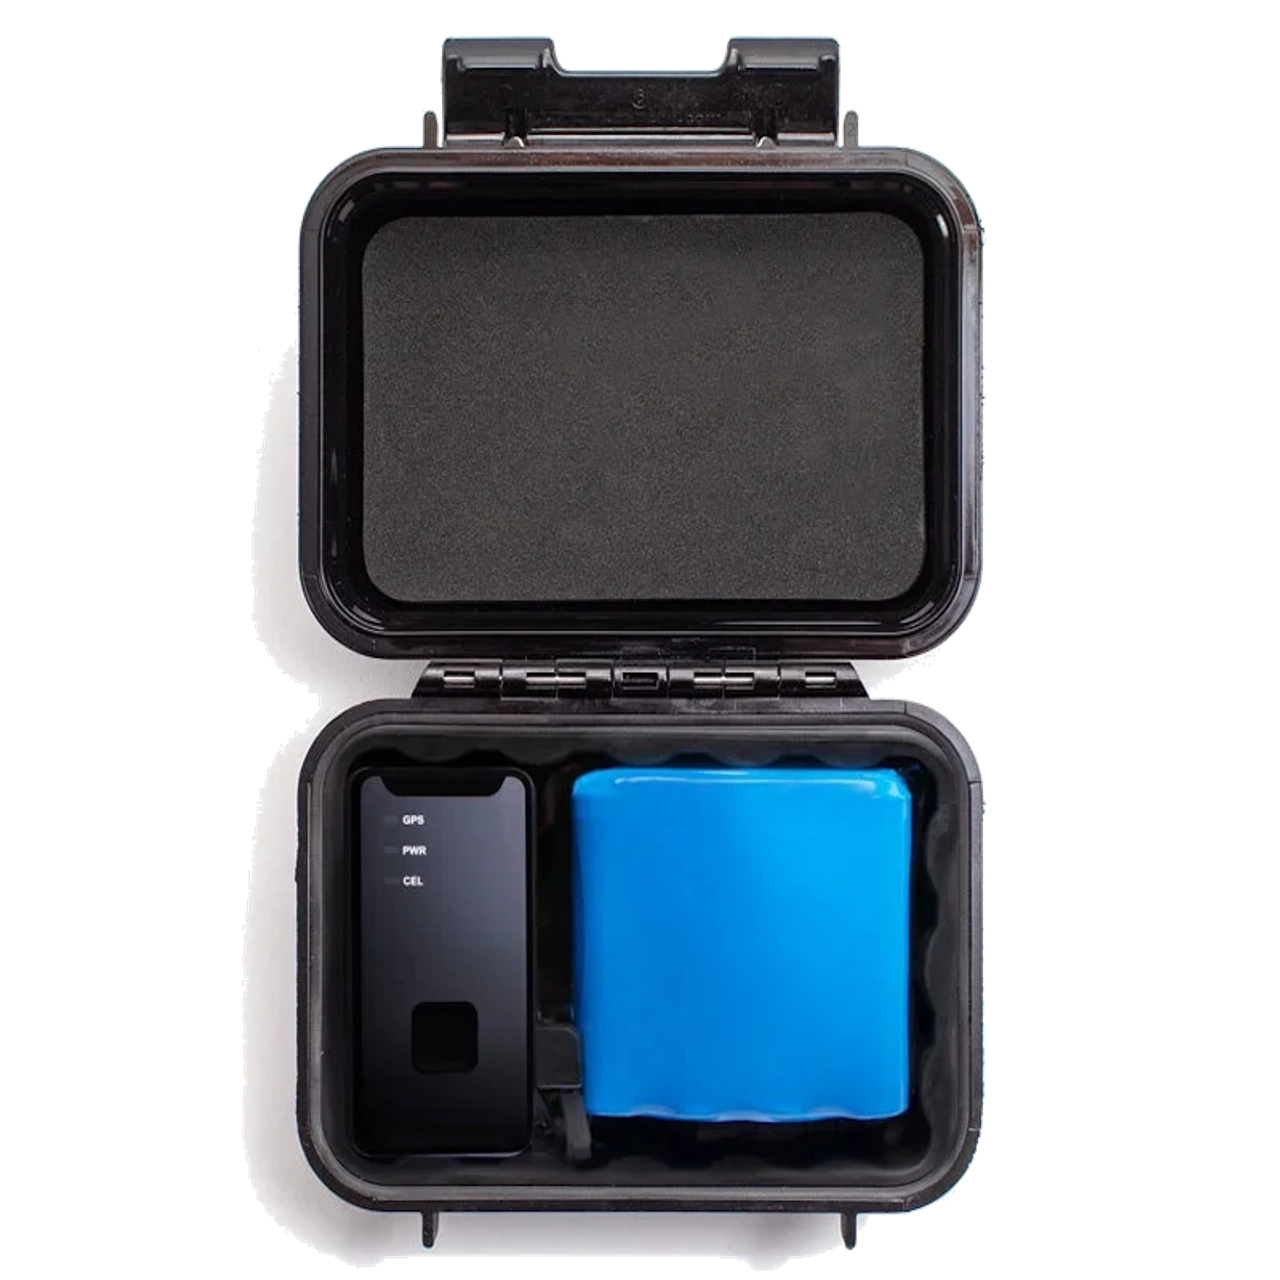 USFT's QT-V4 Pro GPS Tracker Device